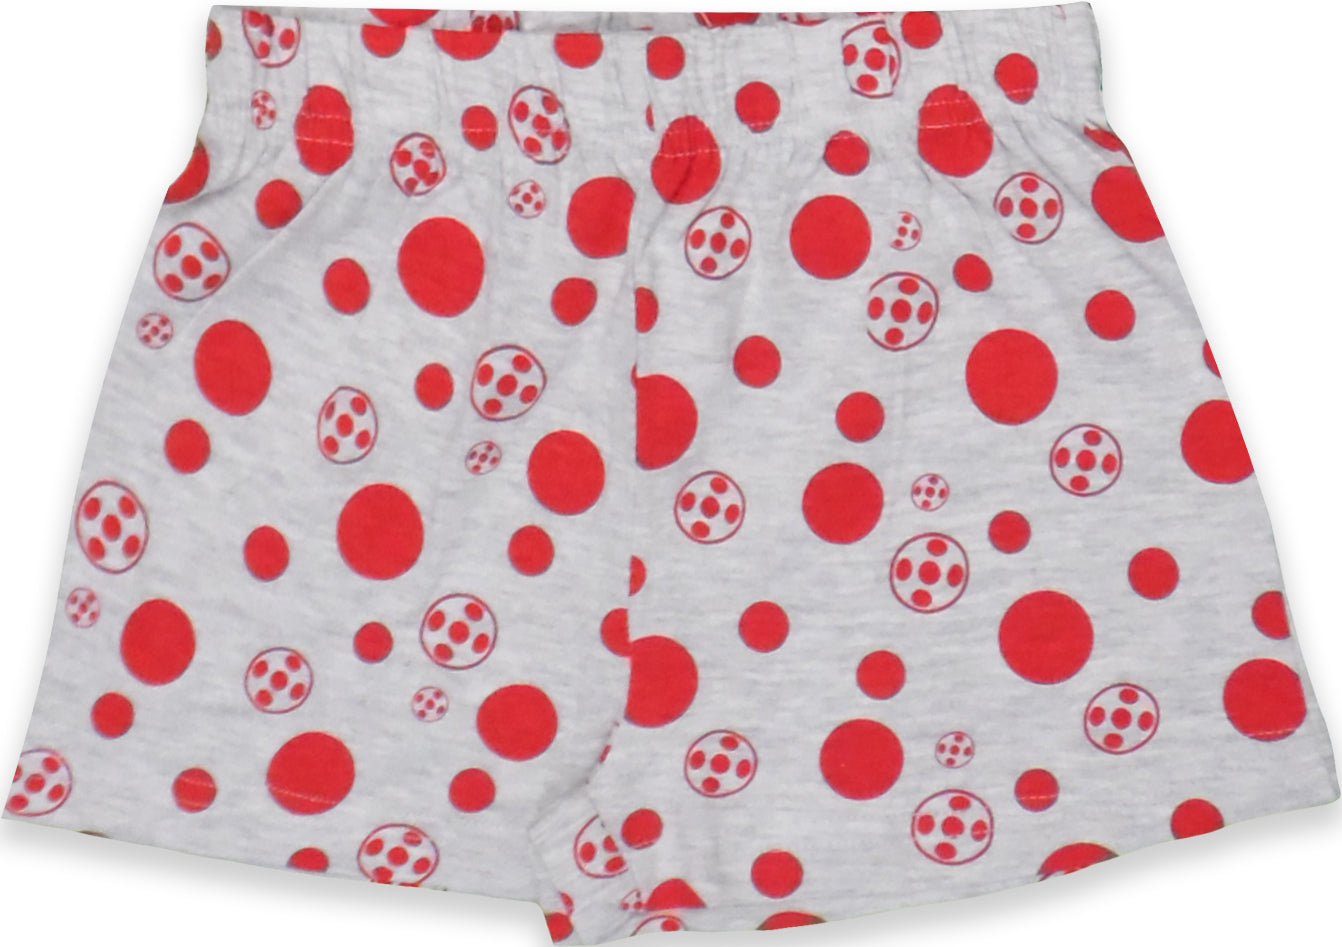 Miraculous Ladybug Cotton Short Sleeve Pyjama Set for Girls